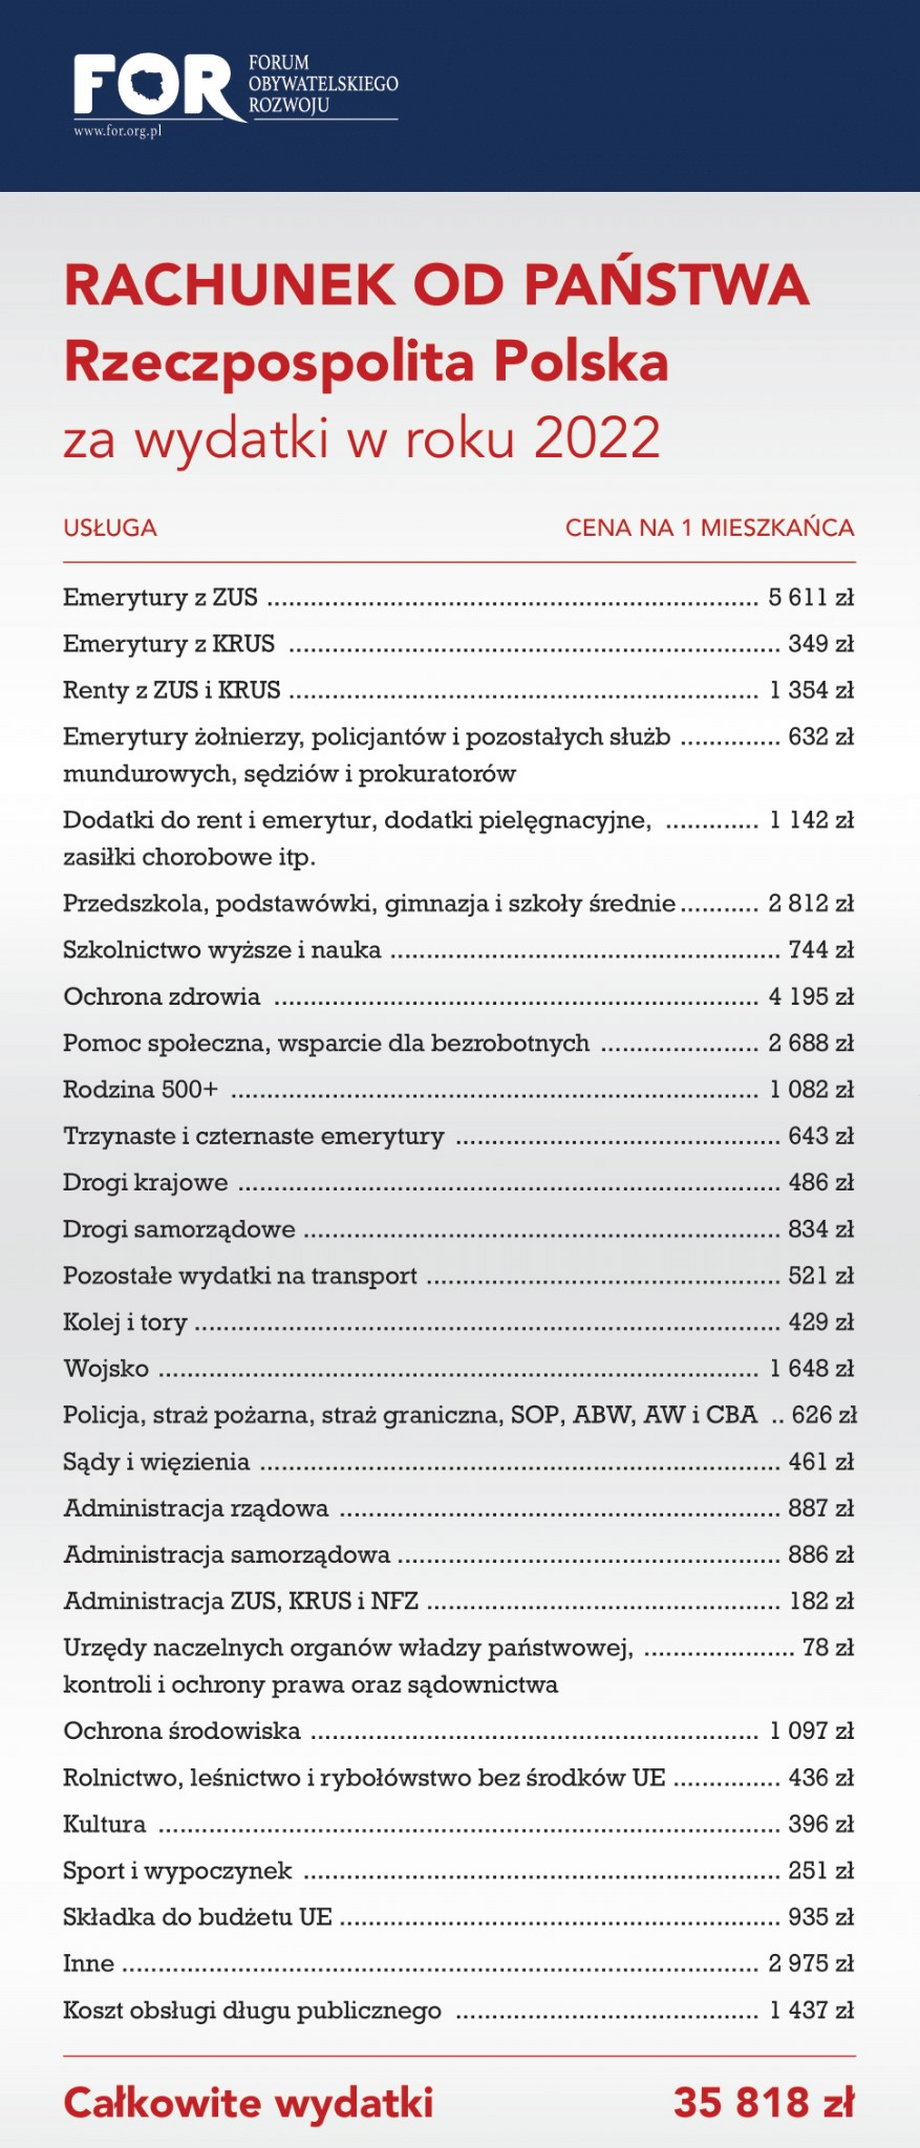 FOR podsumował wydatki państwa w 2022 r. Rachunek dla Kowalskiego opiewa na kwotę prawie 36 tys. zł.